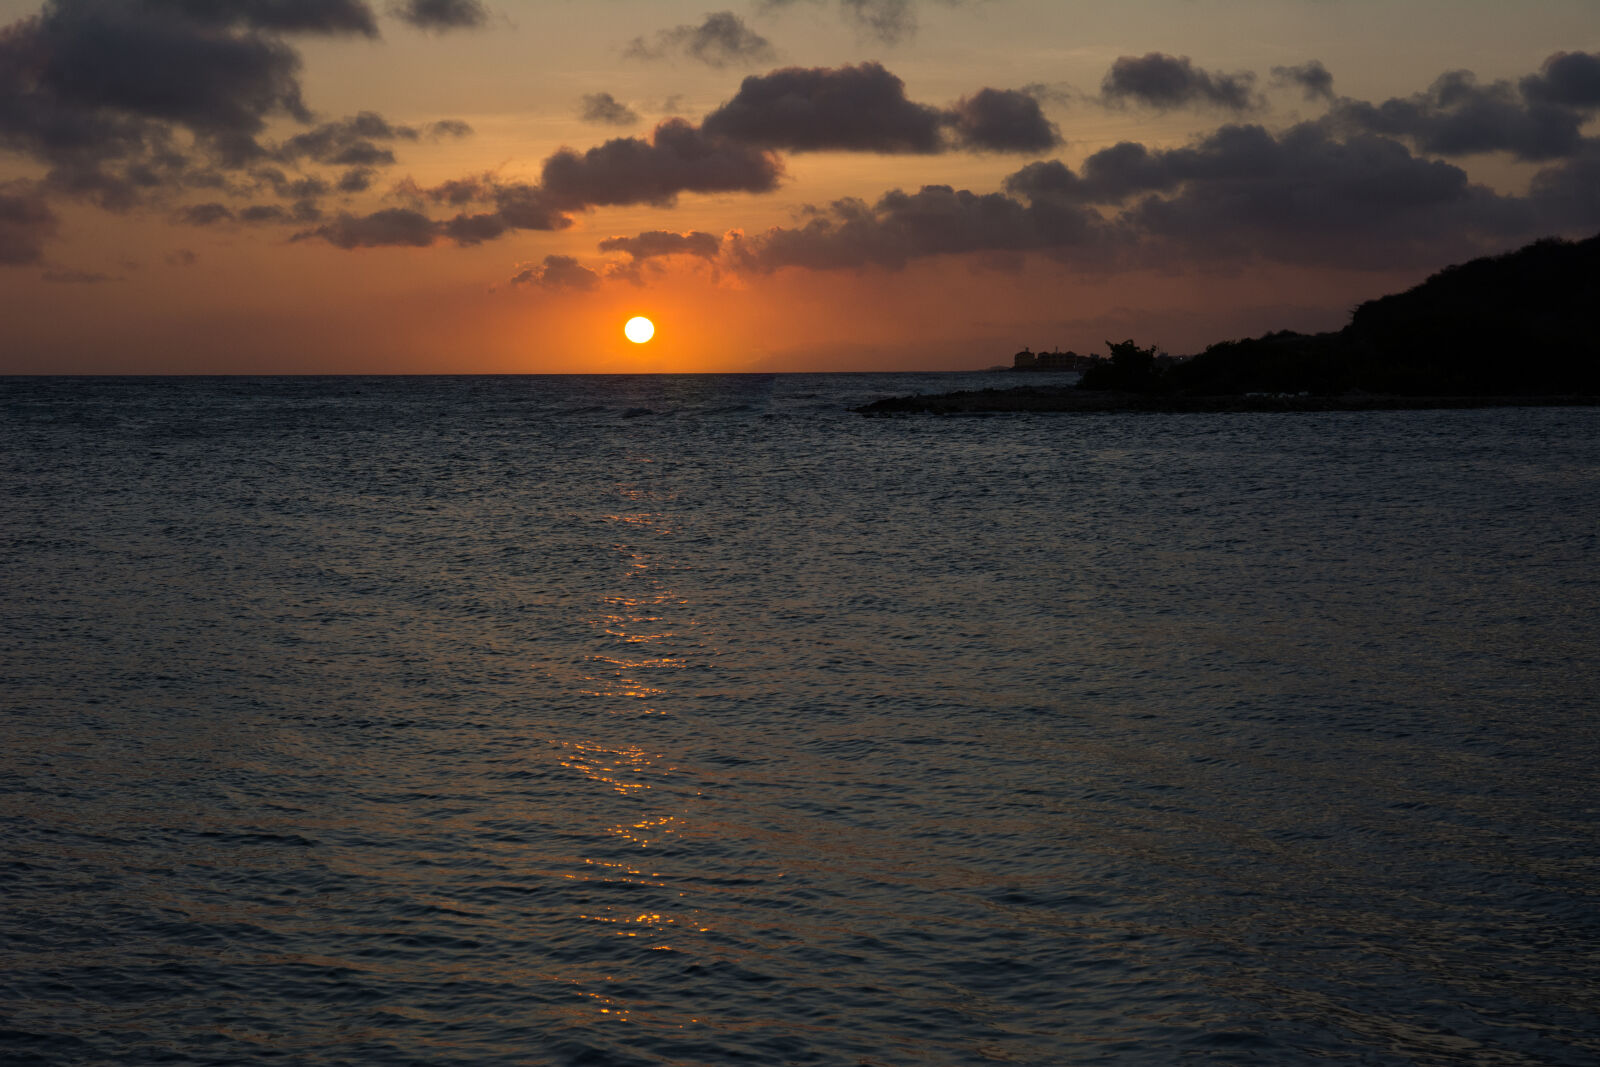 Nikon AF-S DX Nikkor 16-85mm F3.5-5.6G ED VR sample photo. Sea, sunset, ocean, twilight photography